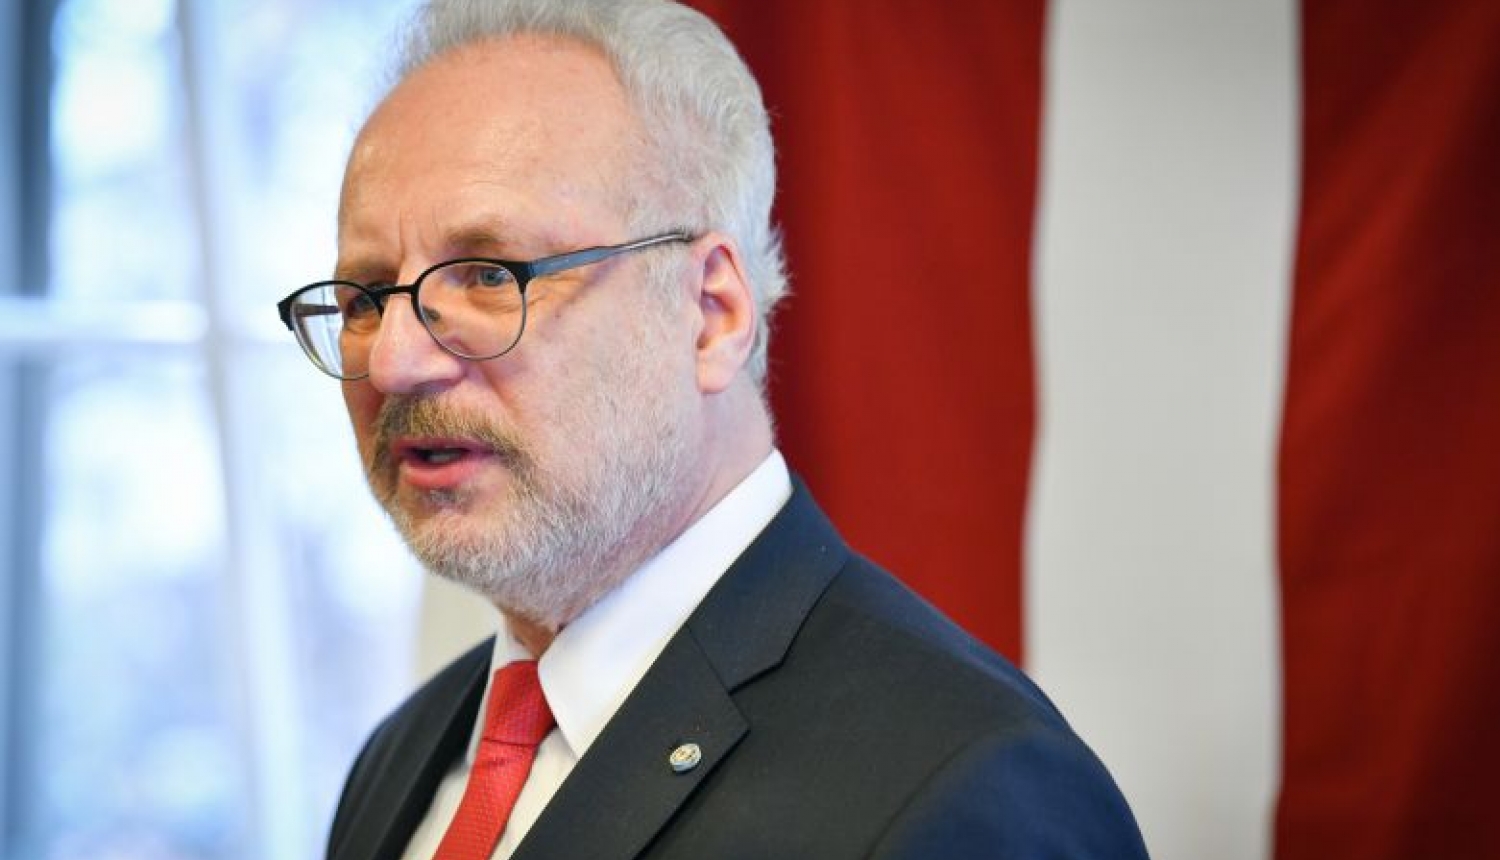 Valsts prezidents aicina Saeimu nostiprināt vēlētāju apvienību dalības iespēju pašvaldību vēlēšanu kandidātu sarakstos